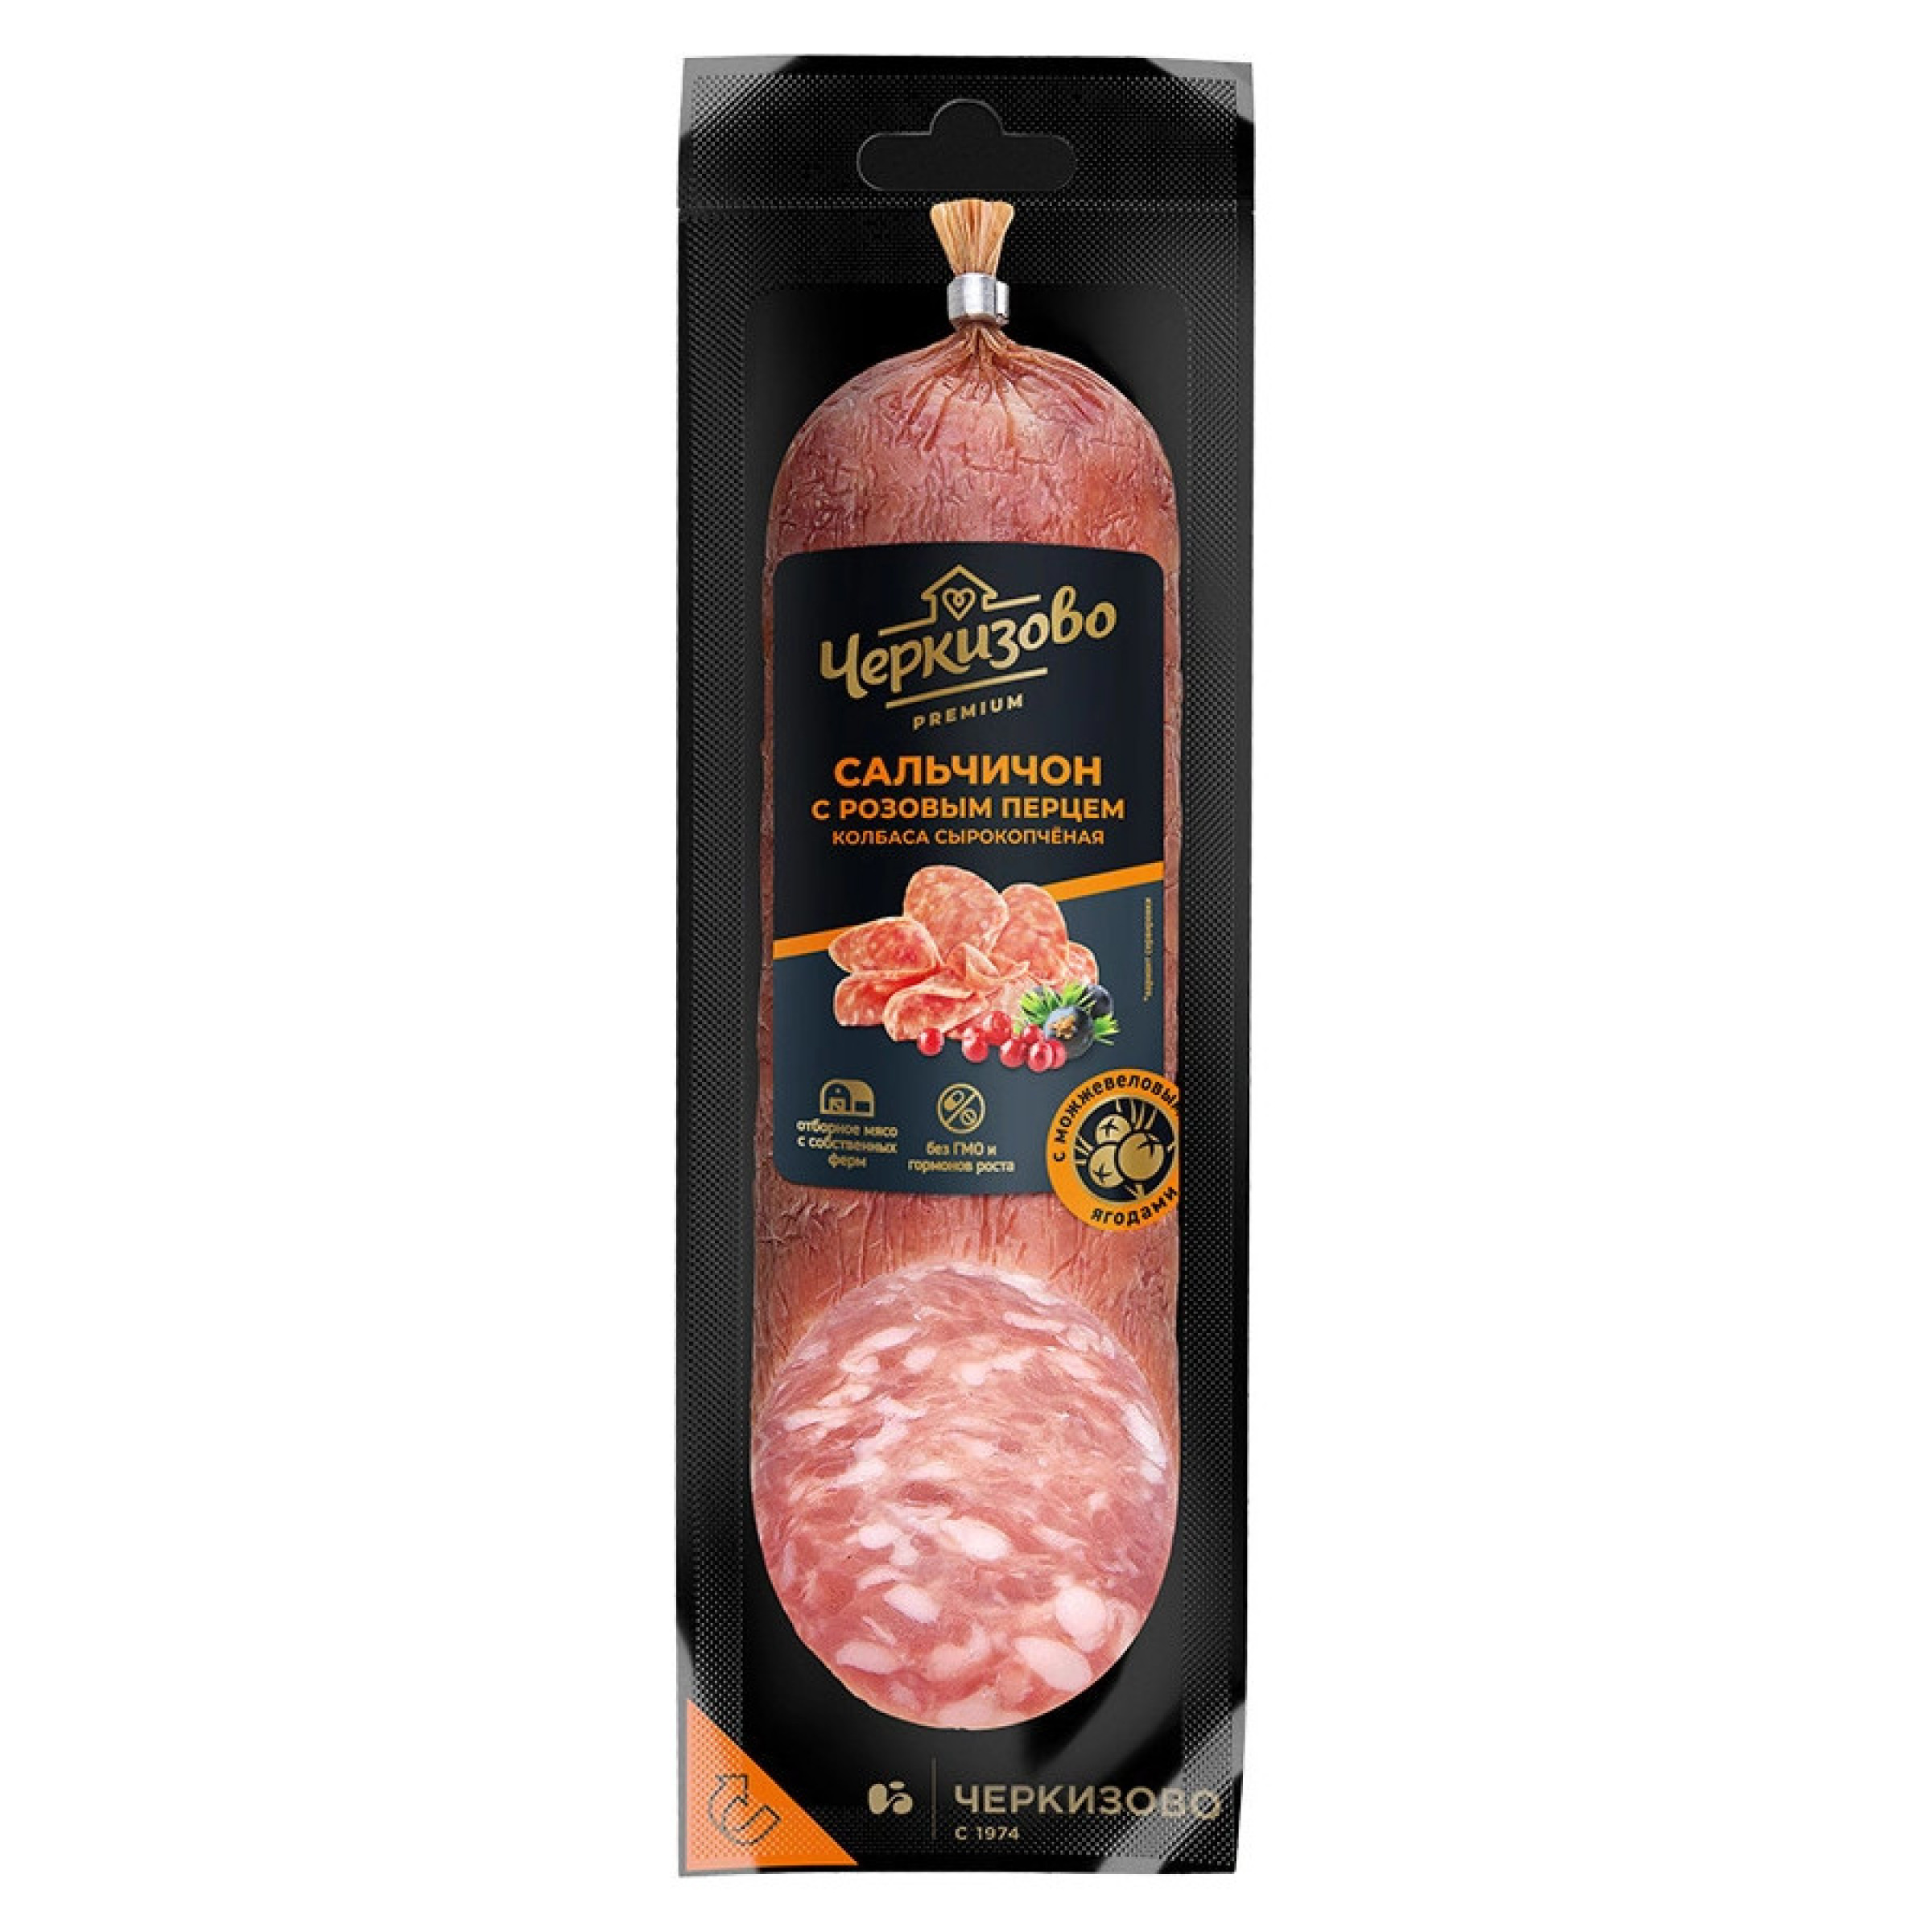 Сырокопченая колбаса Сальчичон с розовым перцем Черкизово 300 г